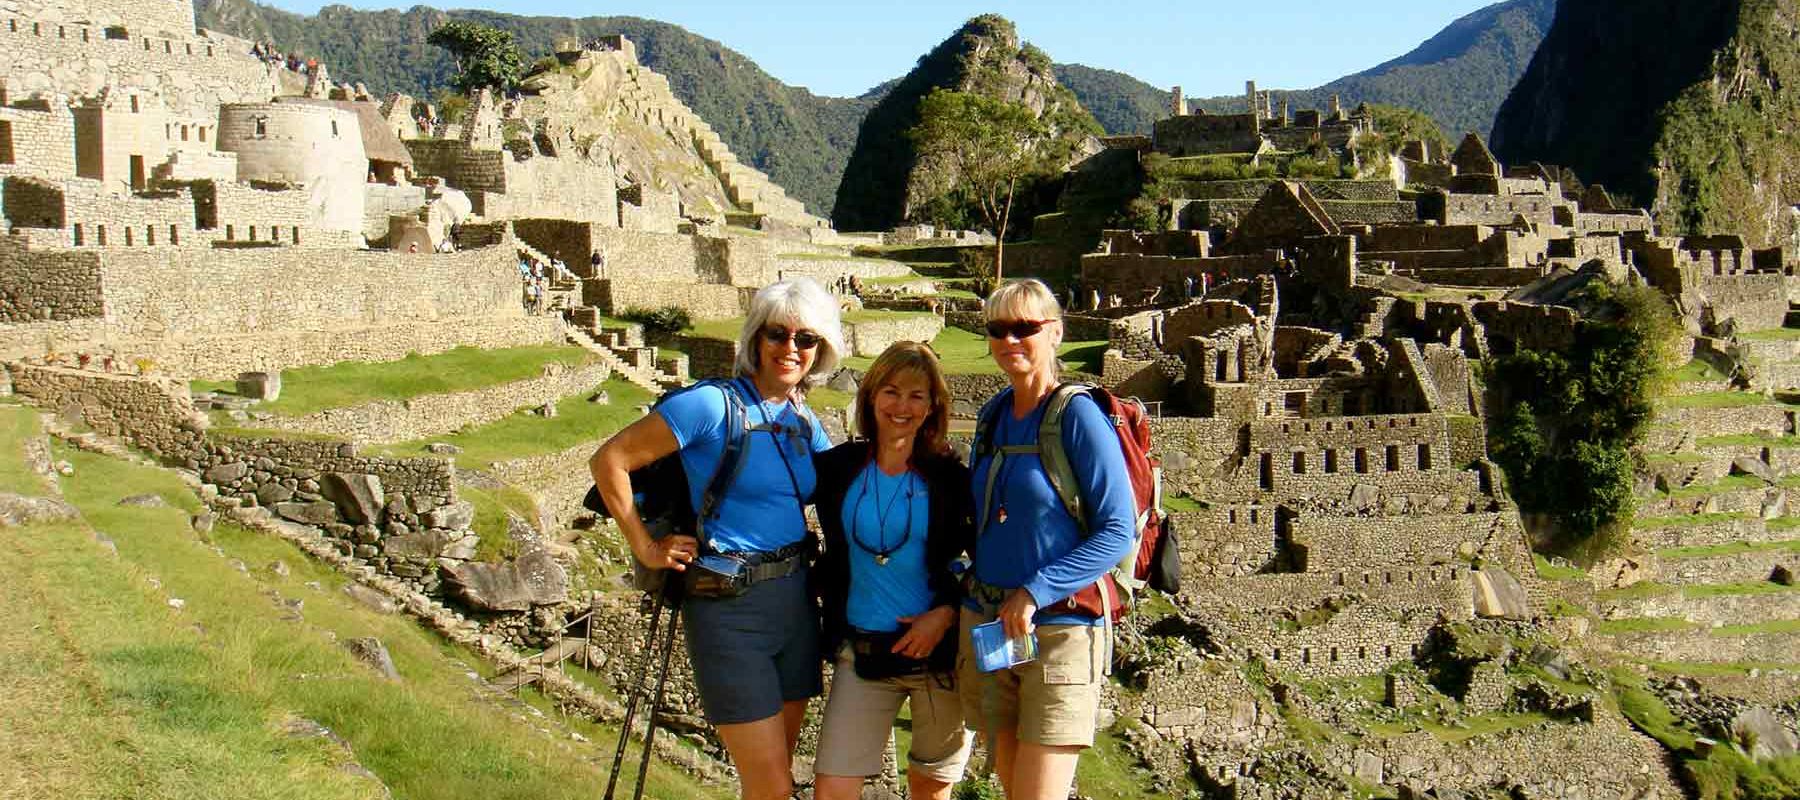 Group of travelers on hiking Trail in Machu Picchu Peru